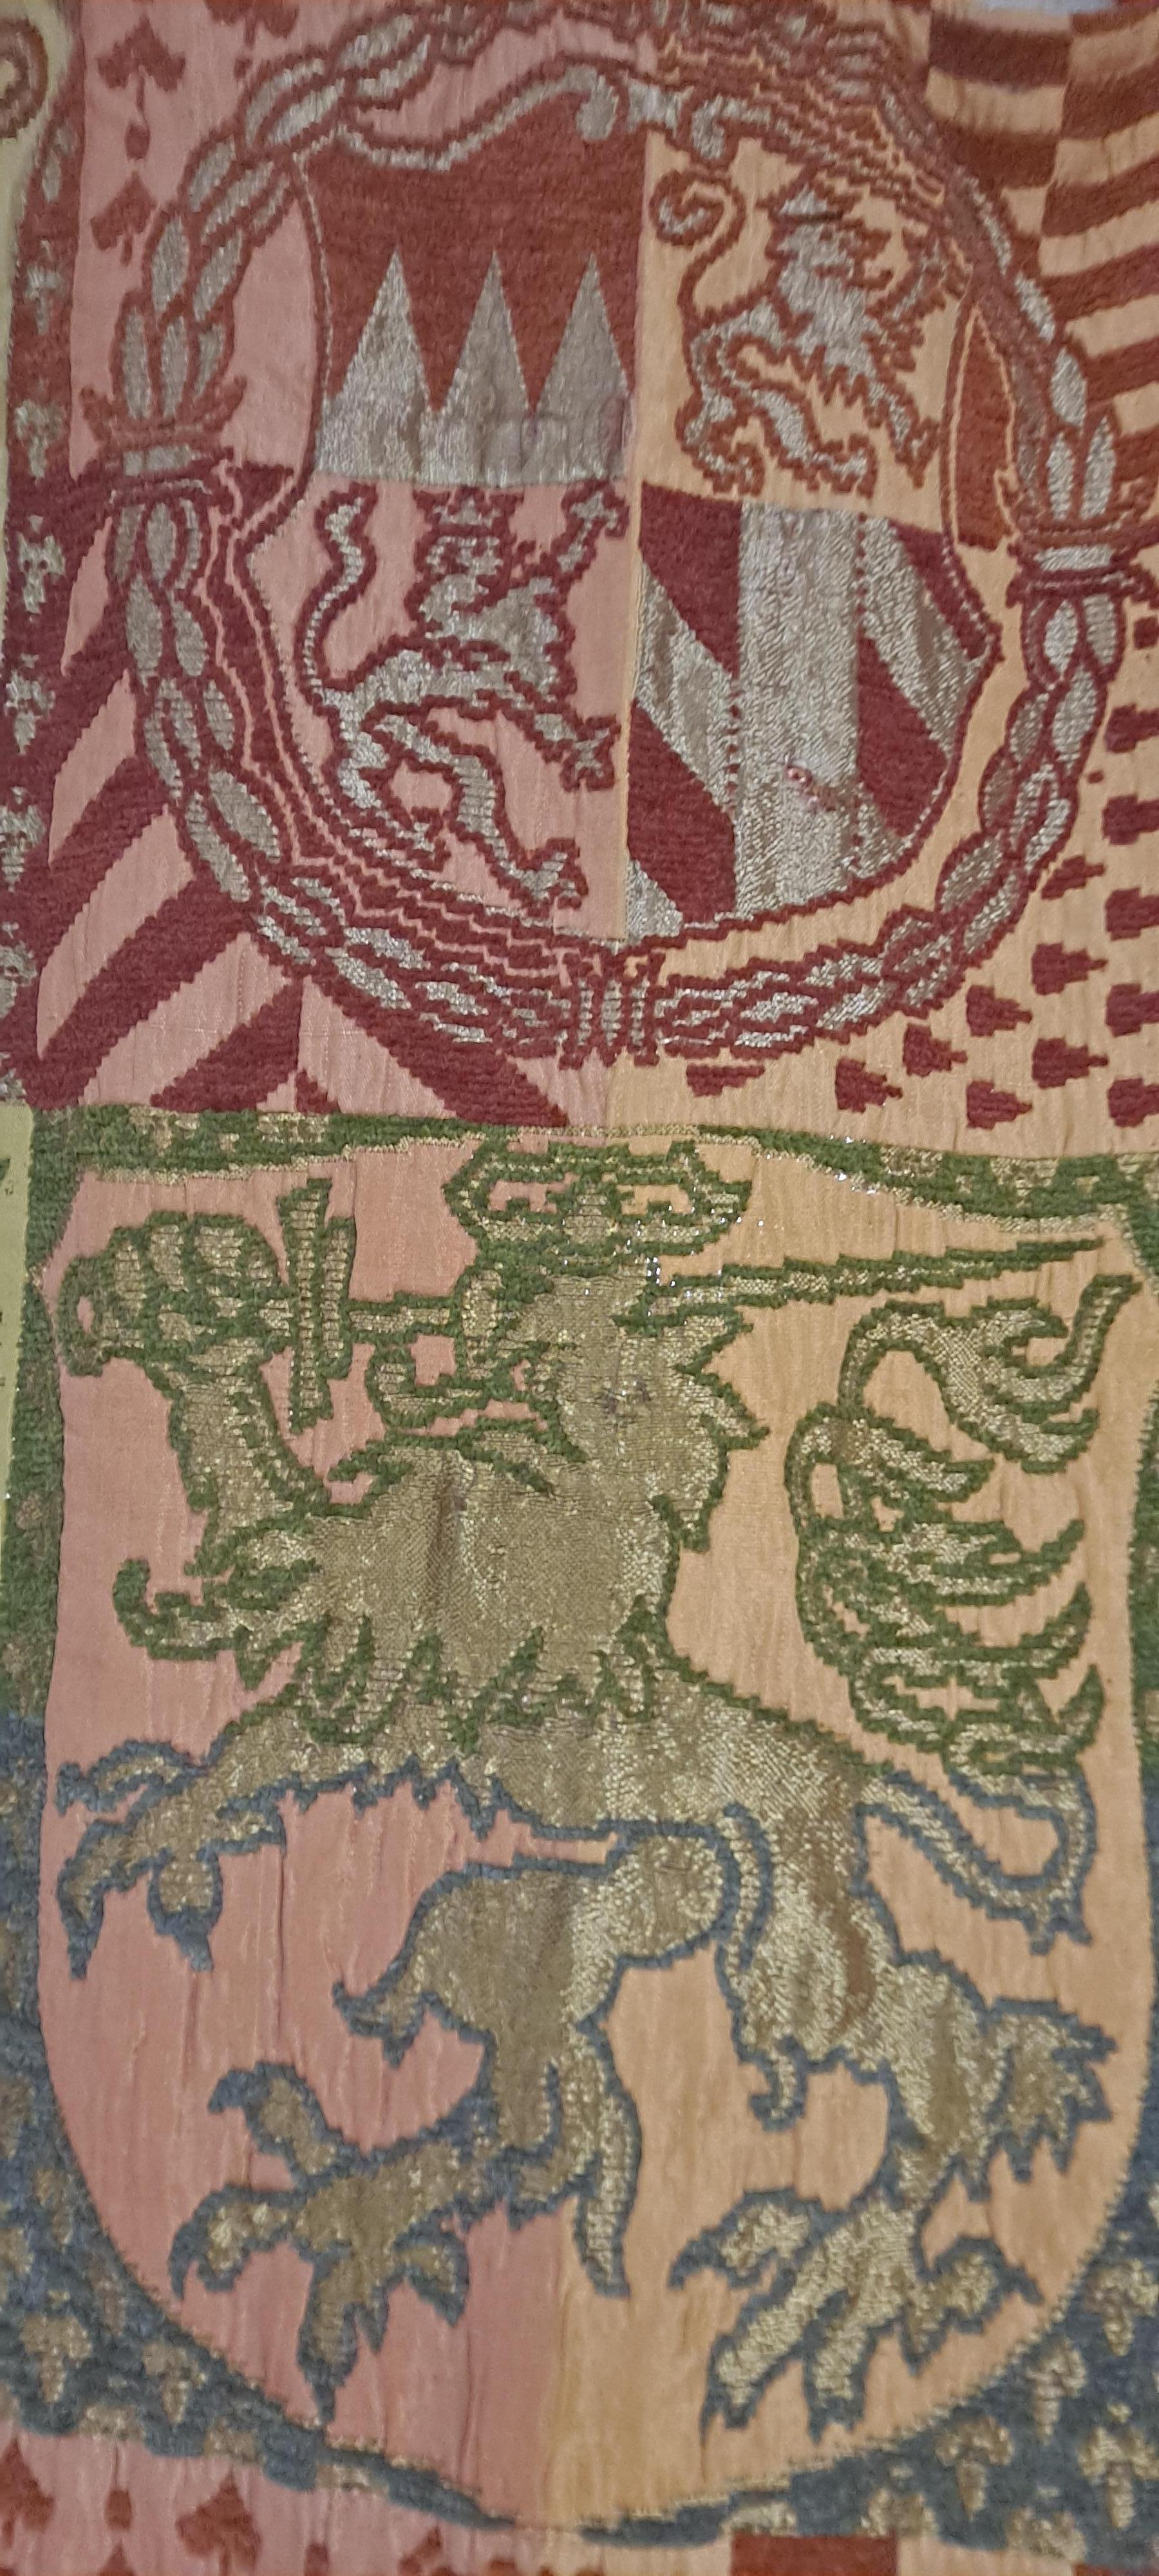 Mittelalterlicher Löwen-Wandteppich im Vintage-Stil mit goldfarbenem Metallfaden und auf dekorativen Eisenringen mit Bügelstange genäht

Abmessungen der Stange: 48